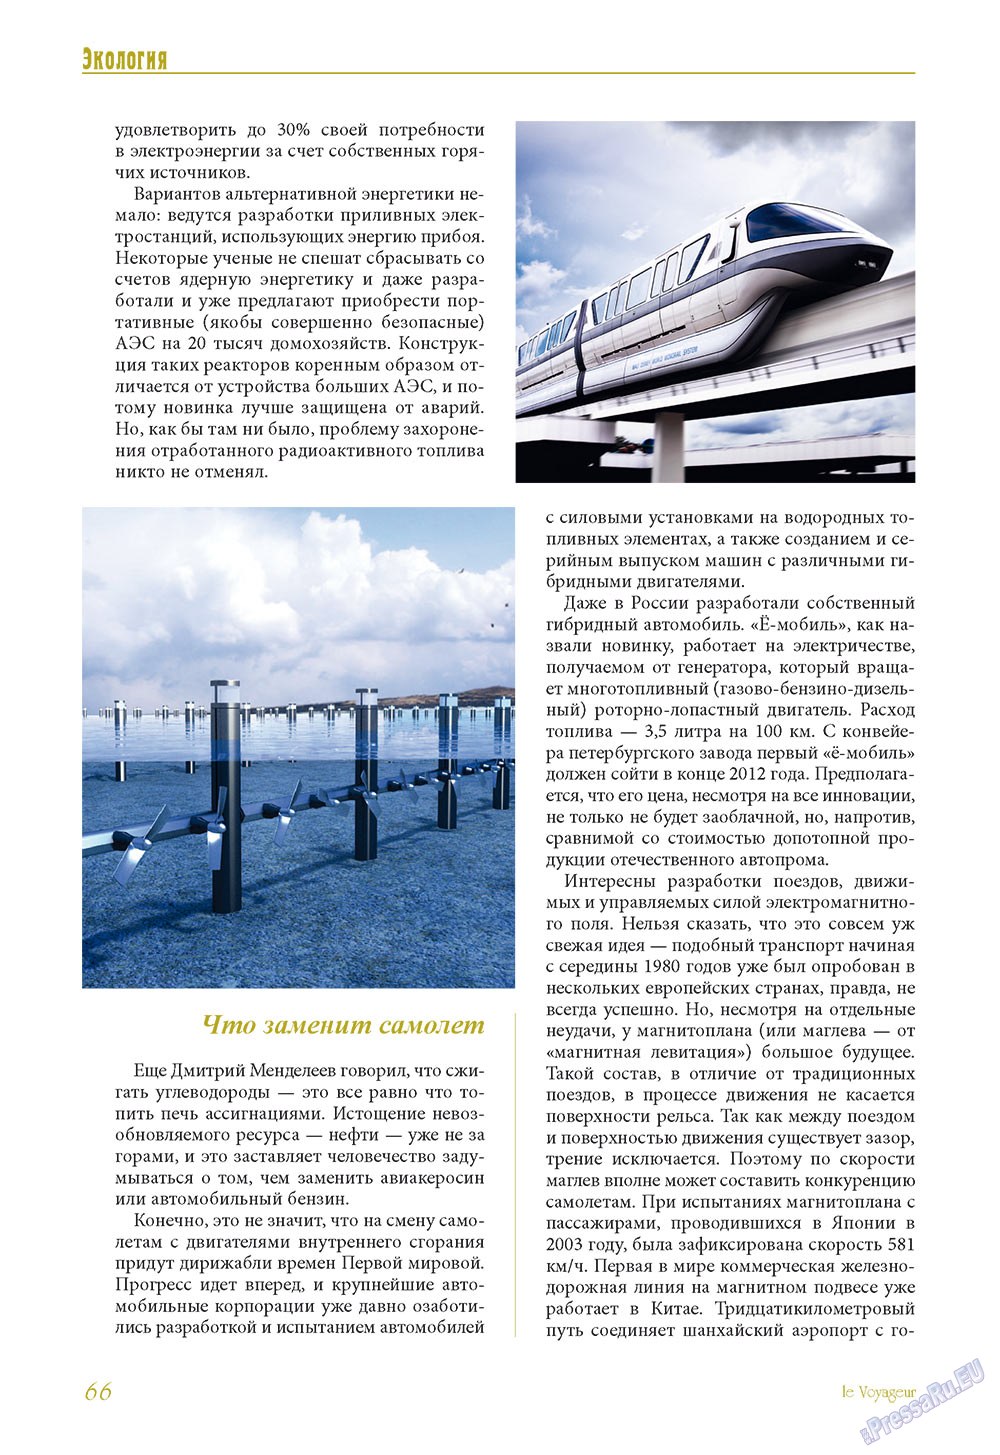 Le Voyageur (журнал). 2011 год, номер 16, стр. 68